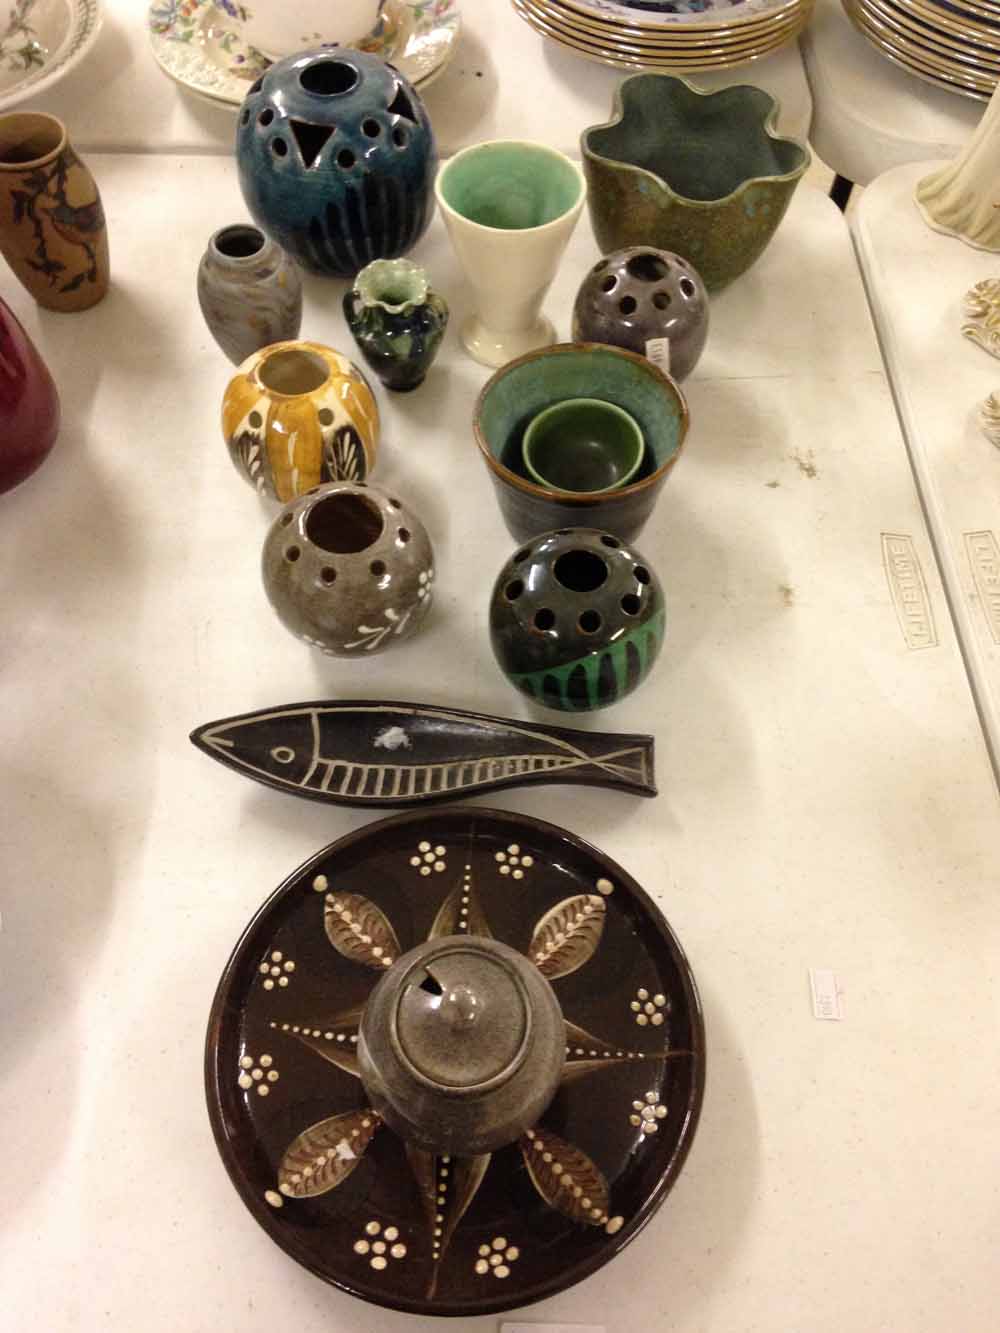 14 pieces of studio pottery.